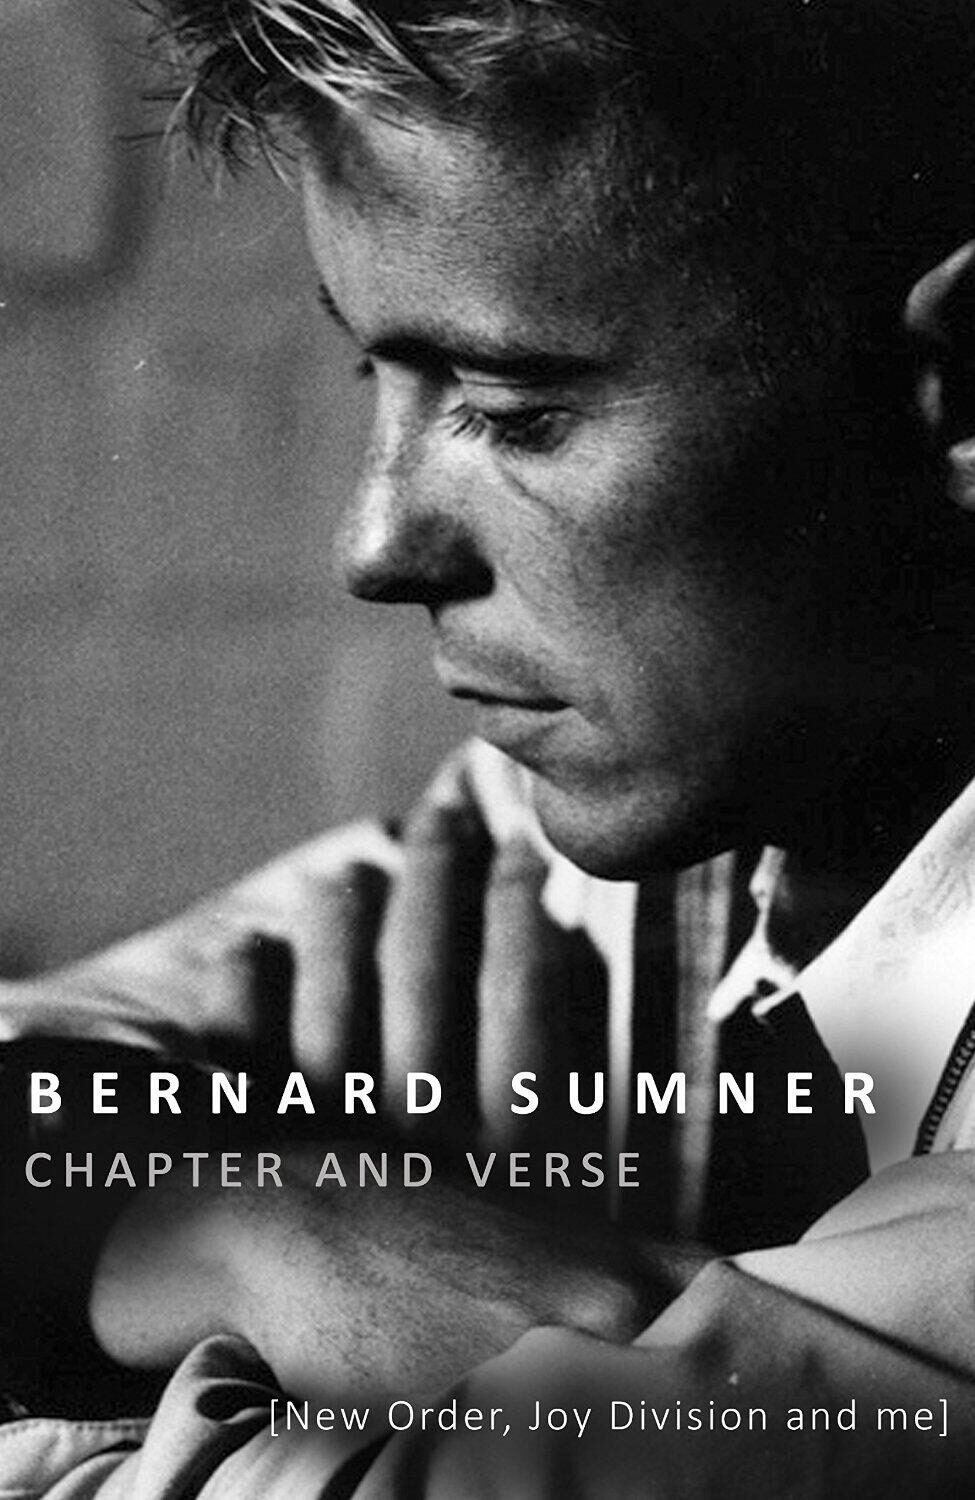 Lista la autobiografía de Bernard Sumner